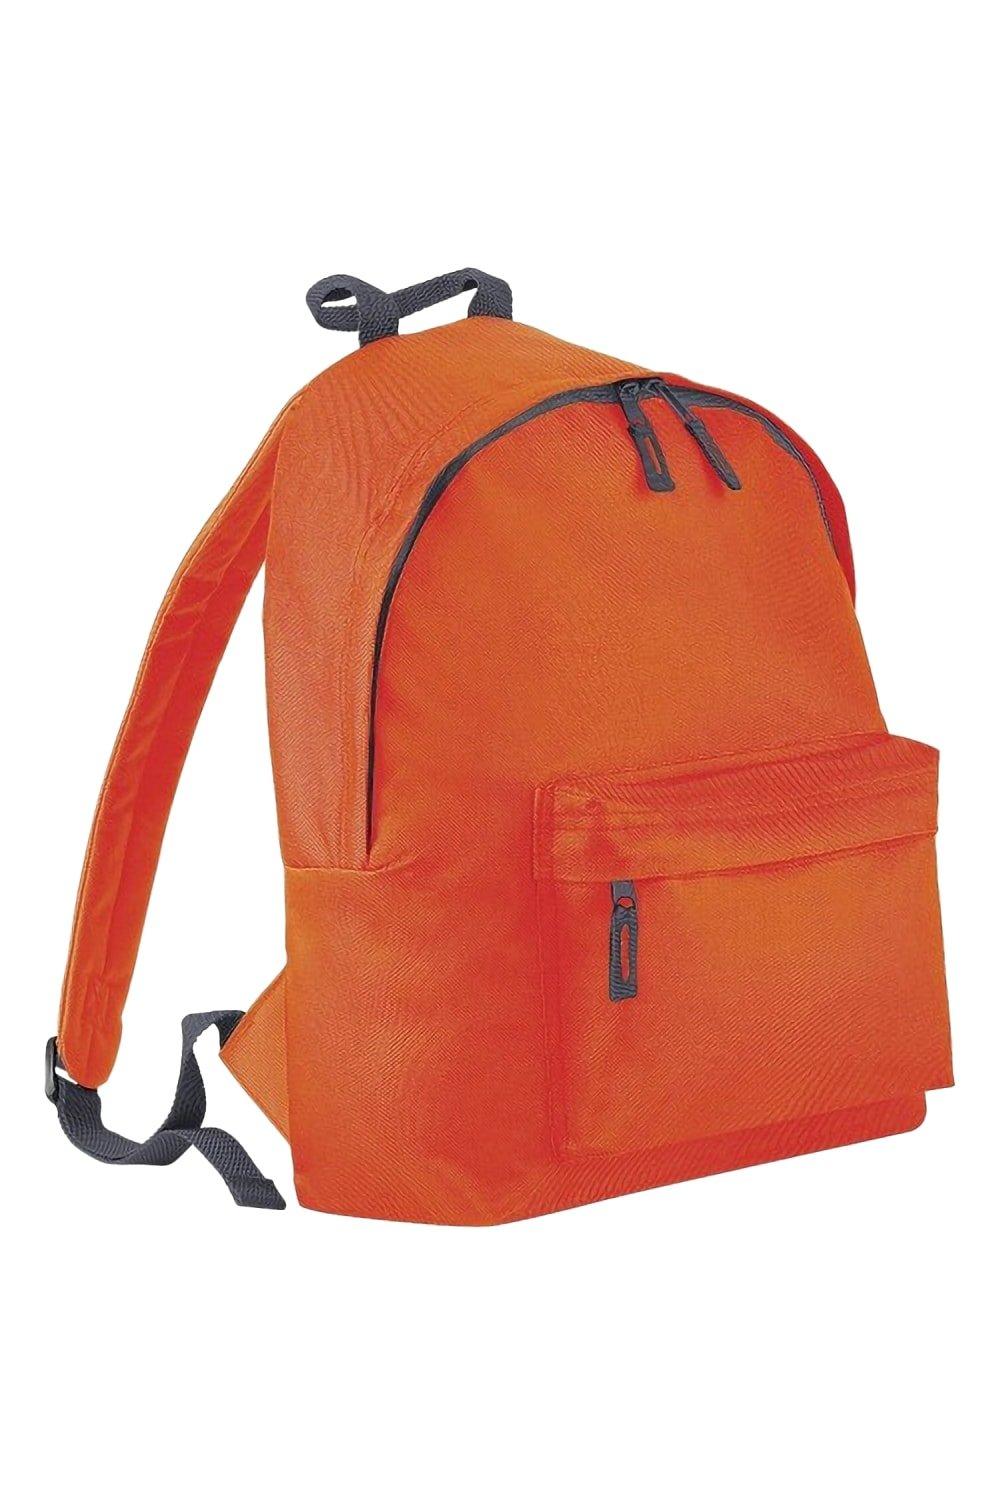 Модный рюкзак / рюкзак (14 литров) (2 шт. в упаковке) Bagbase, оранжевый